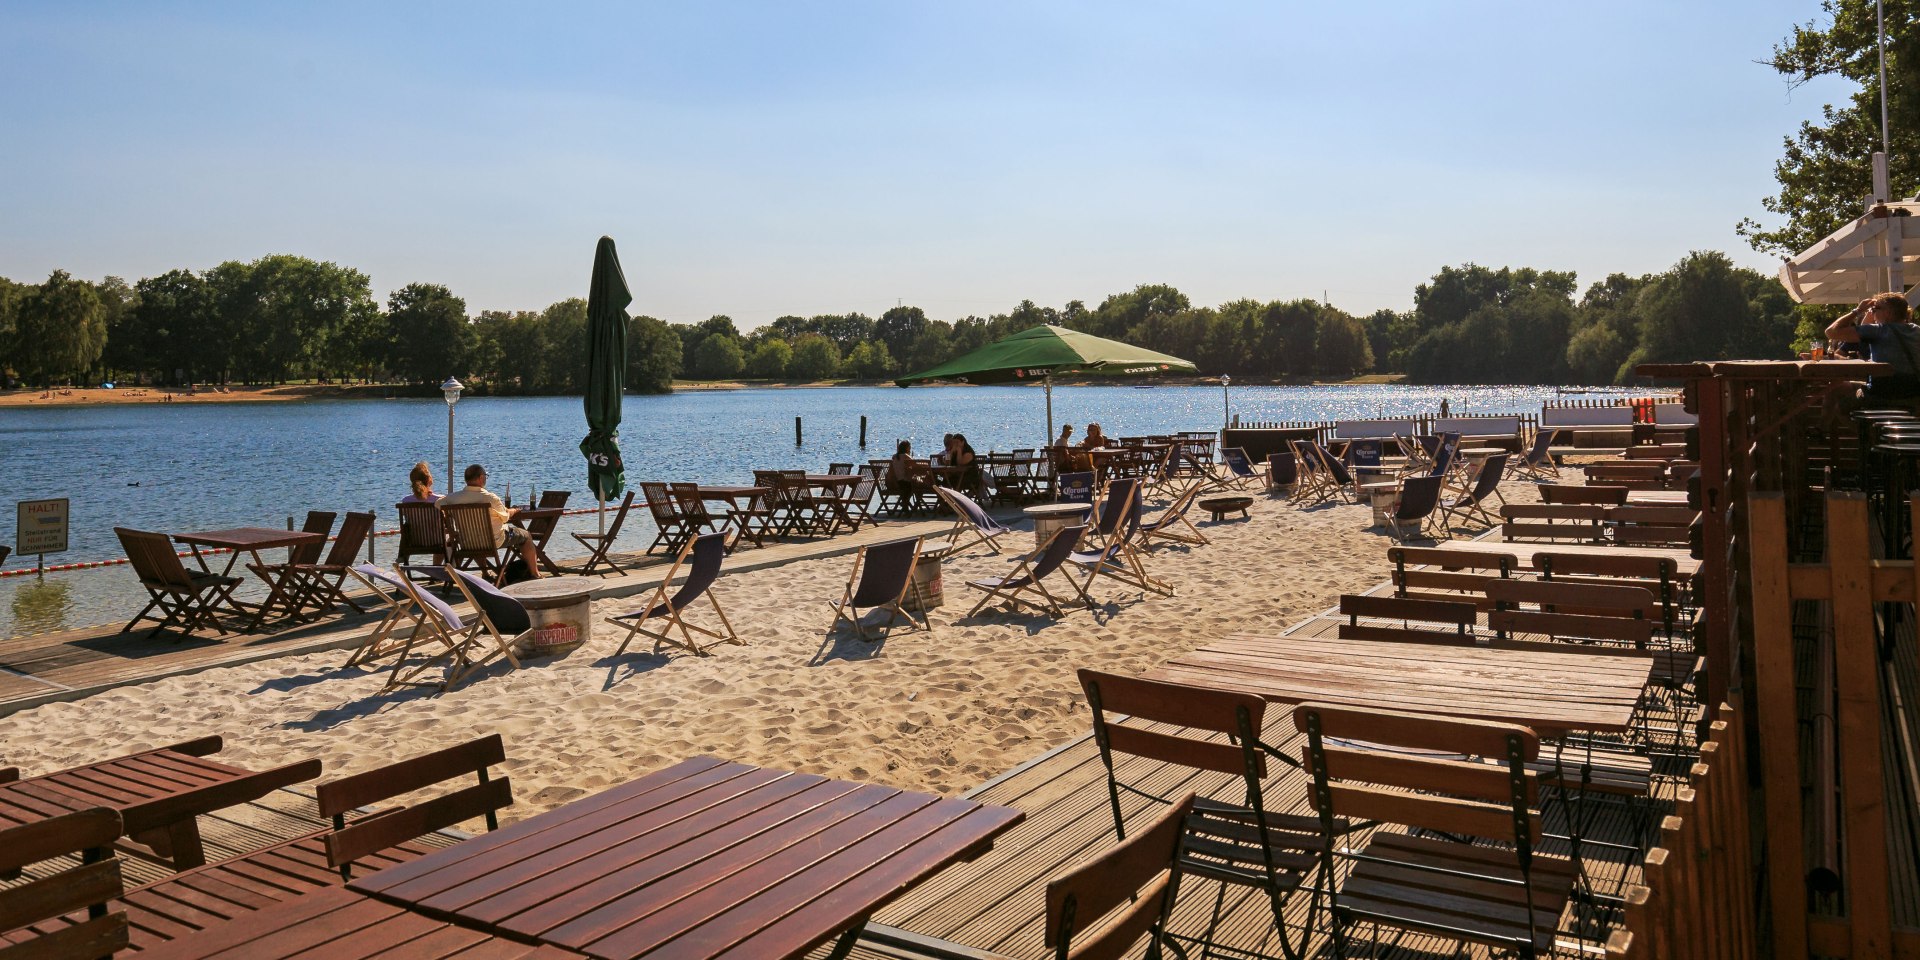 Strandbad am Silbersee mit Biergarten, © Hannover Marketing und Tourismus GmbH / Lars Gerhardts